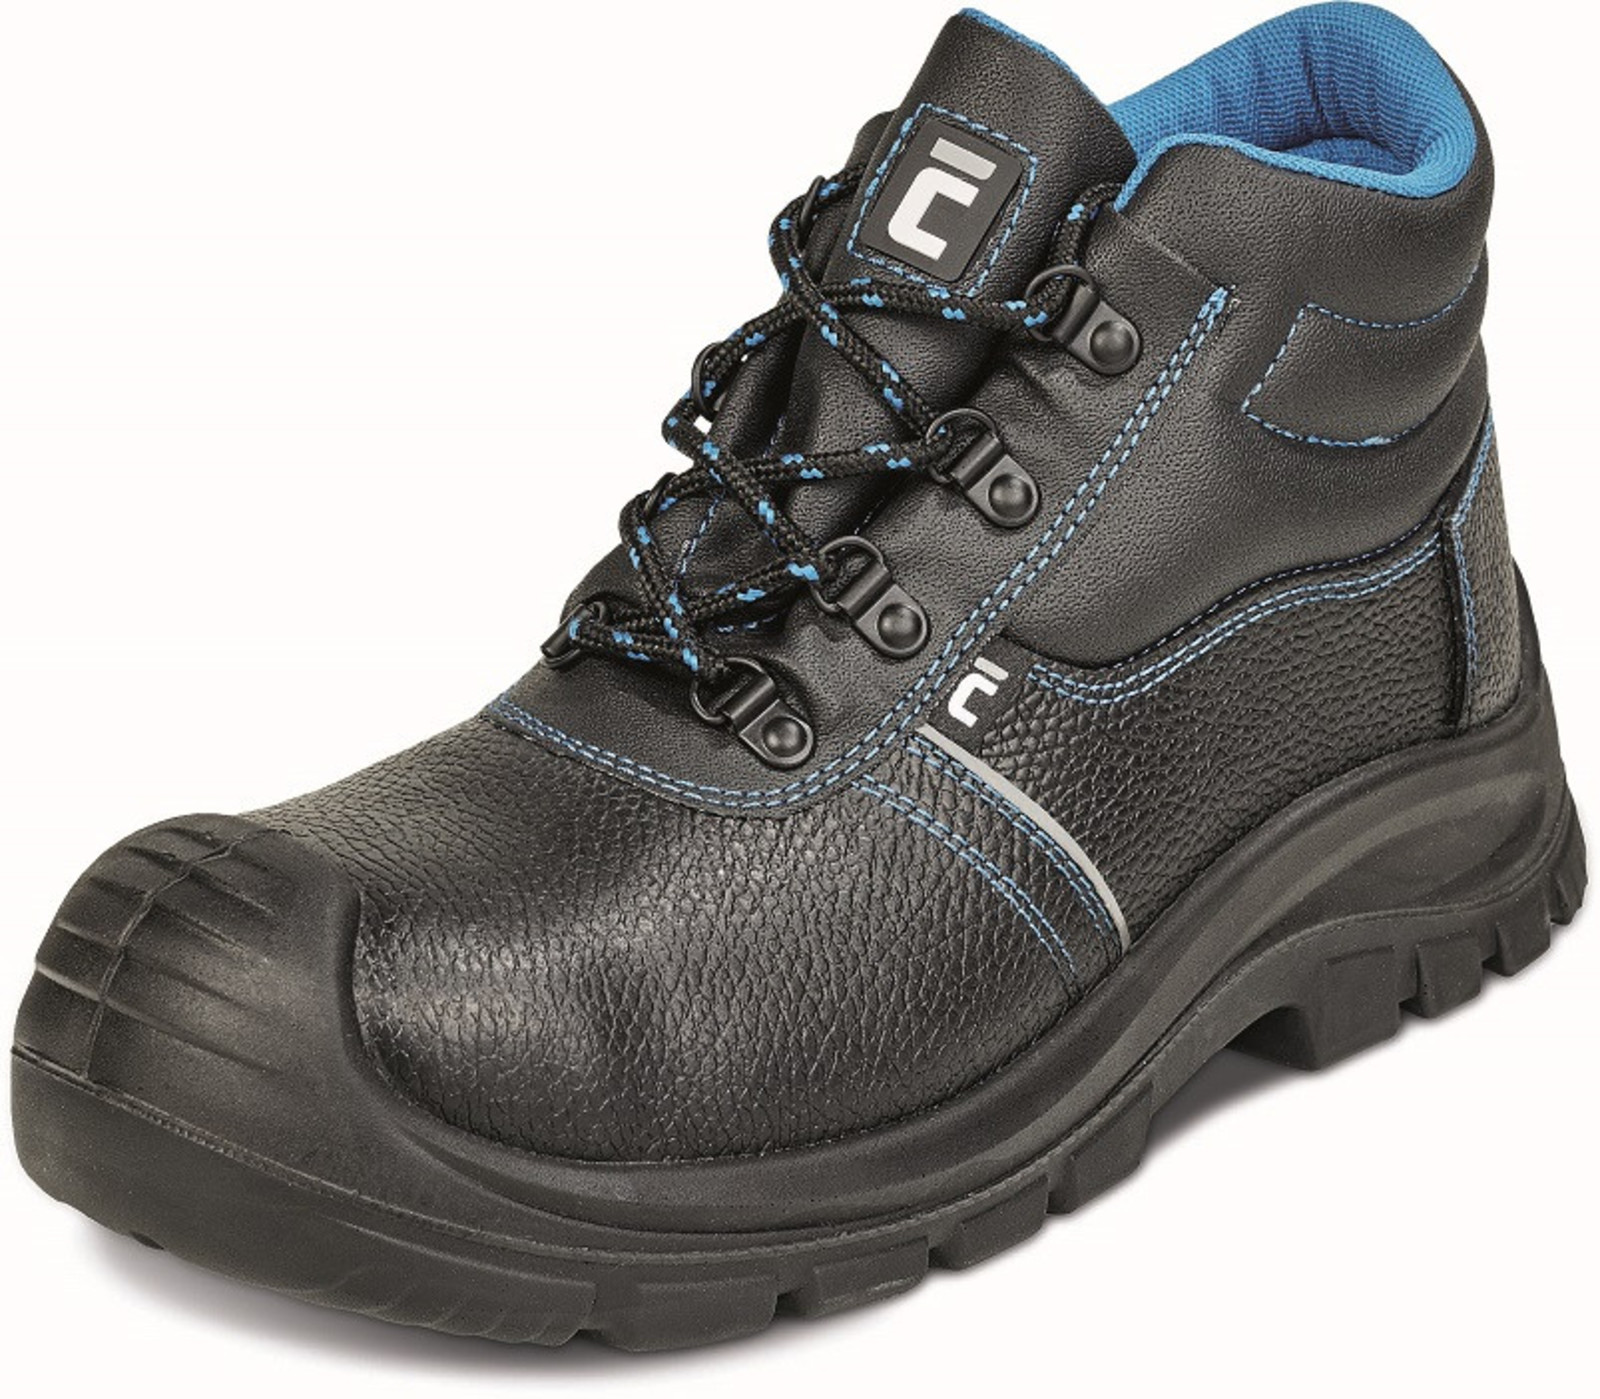 Bezpečnostná obuv Raven XT S3 - veľkosť: 44, farba: čierna